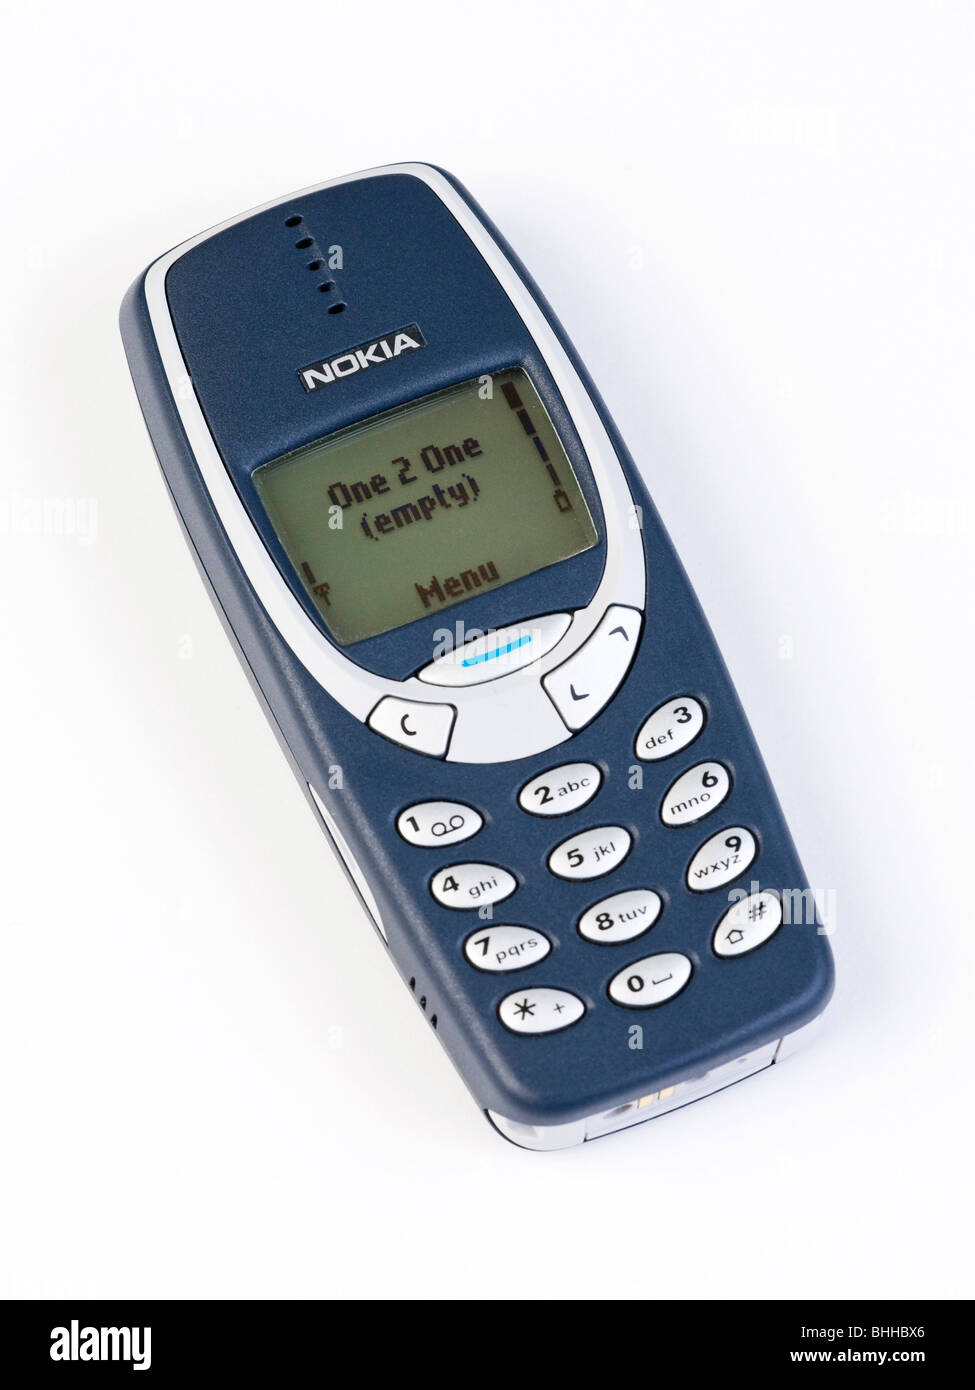 Nokia 3310 -Fotos und -Bildmaterial in hoher Auflösung – Alamy